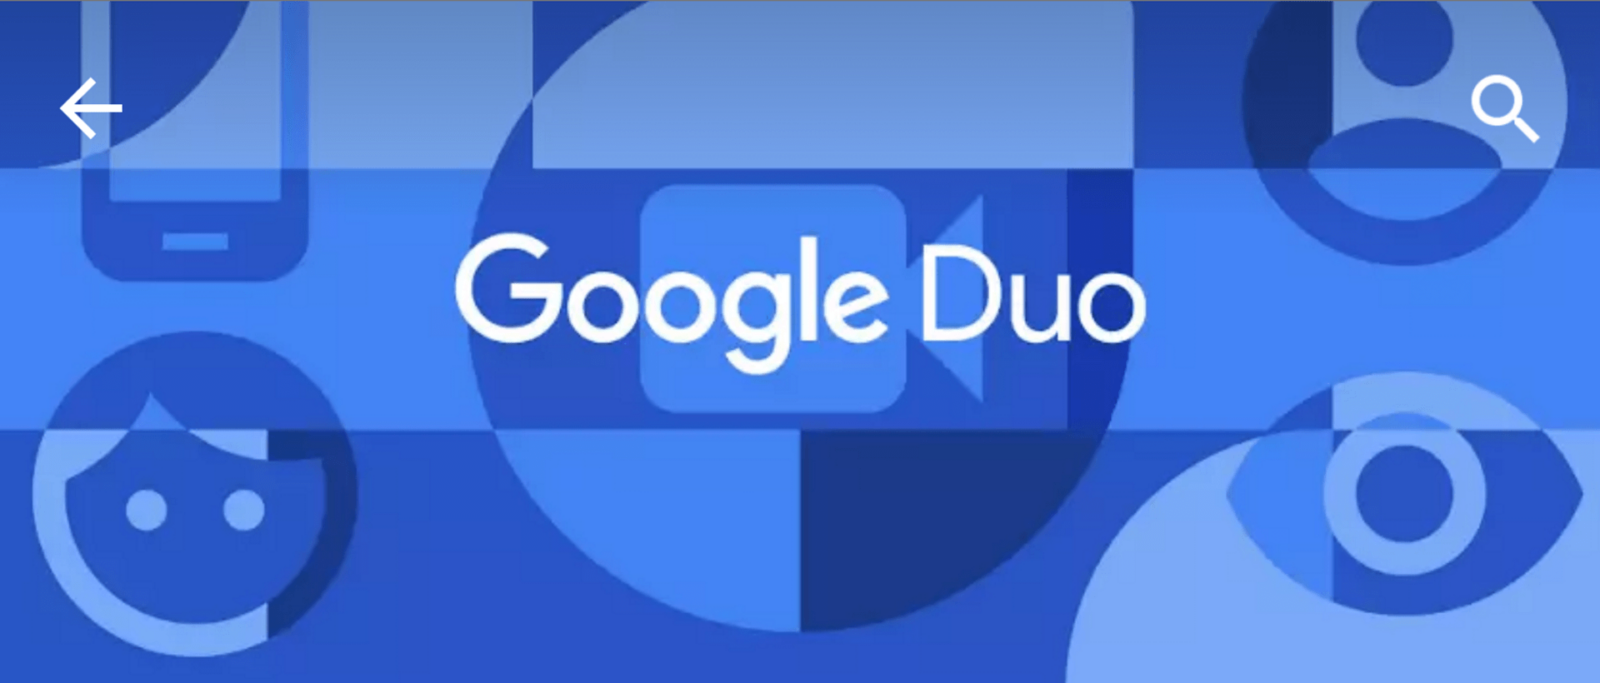 Google Duo uygulamaya sahip olmayan kullanicilari aramaniza izin veriyor